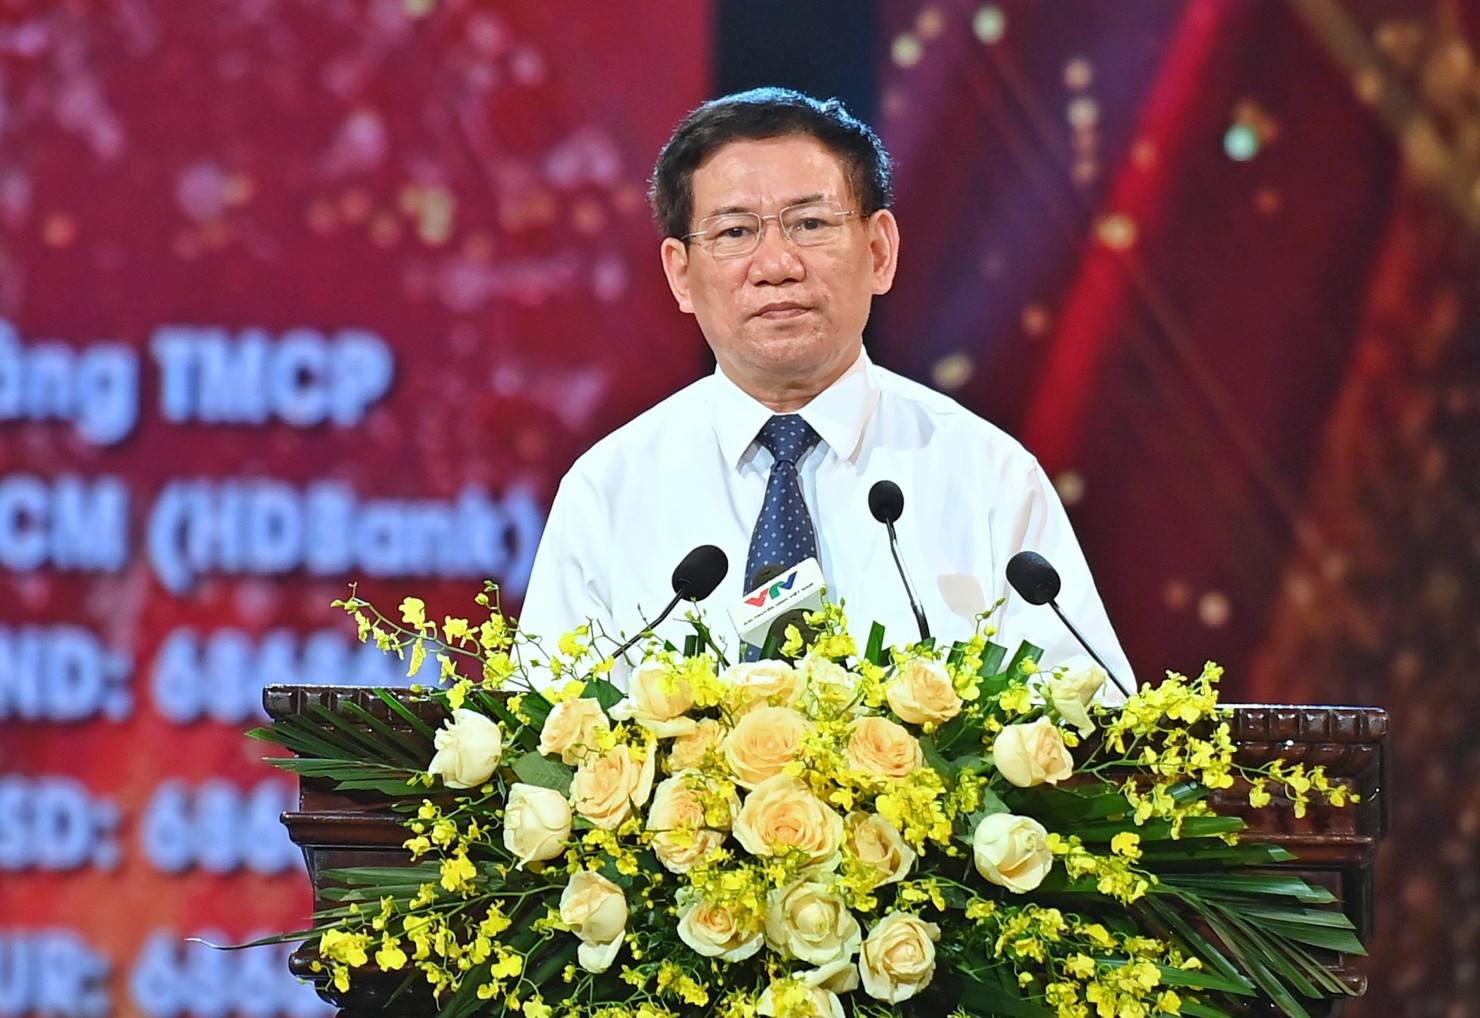 Bộ trưởng Tài chính Hồ Đức Phớc phát biểu tại Lễ ra mắt Quỹ vắc xin phòng Covid-19 tối 5/6/2021 tại Hà Nội. Ảnh: VGP